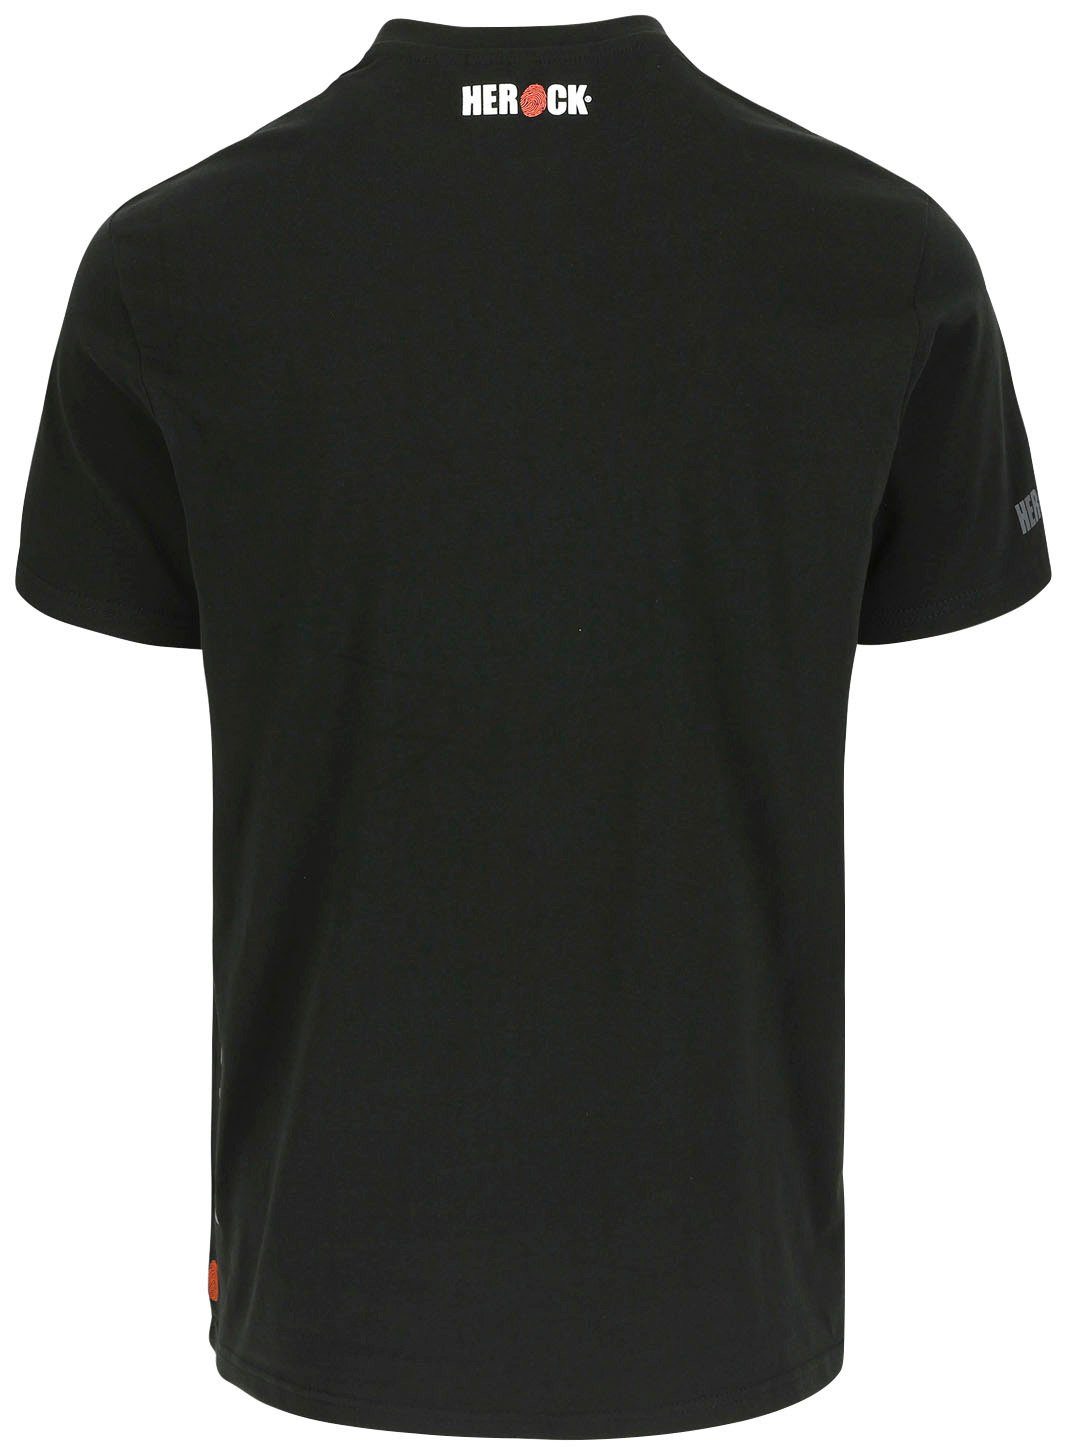 kurze Ärmel, kurze Rundhalsausschnitt, T-Shirt Herock®-Aufdruck, Herock Callius T-Shirt Ärmel schwarz Rippstrickkragen